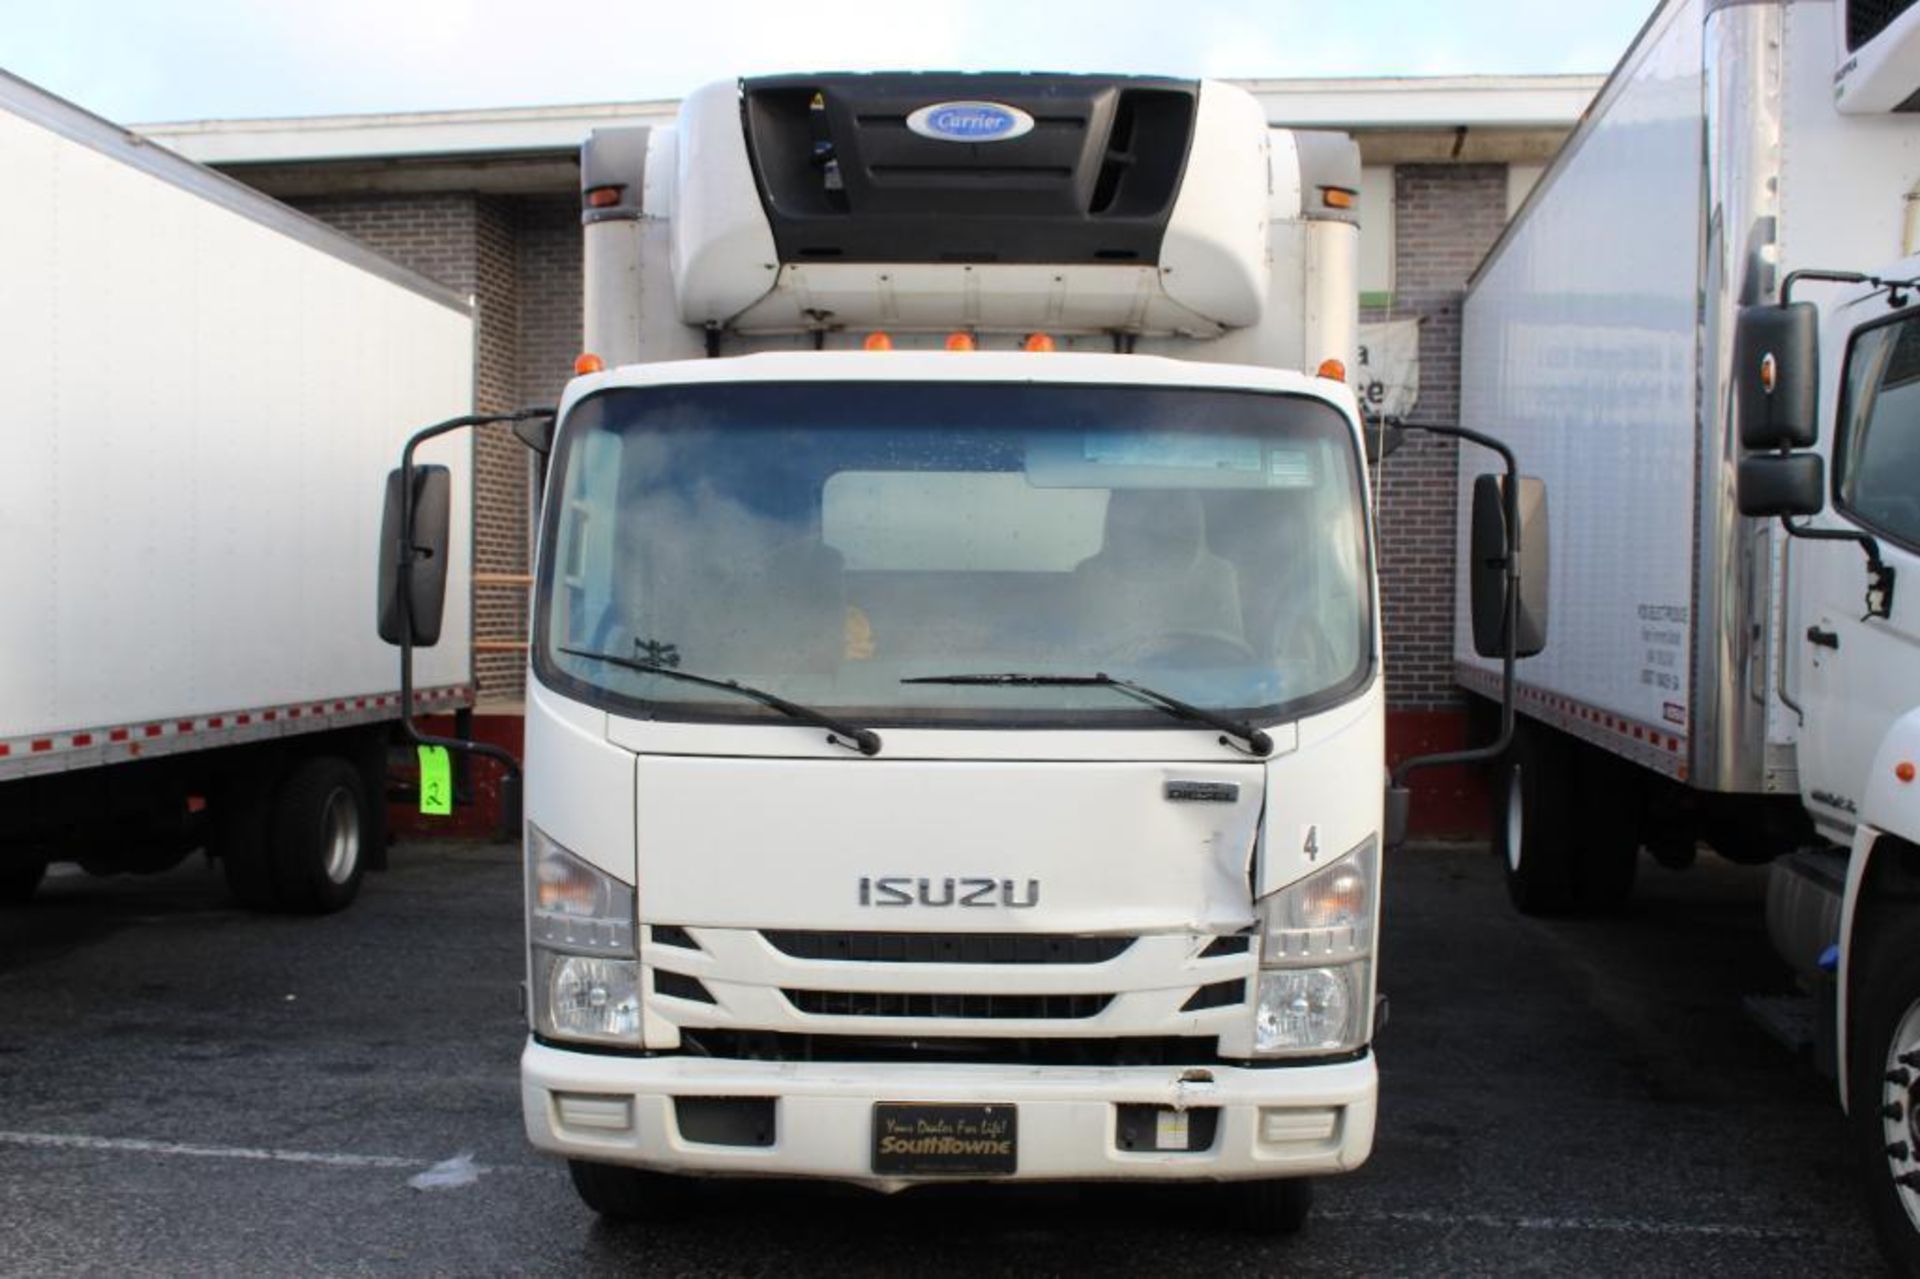 2018 Isuzu NQR Diesel Truck - Image 2 of 34